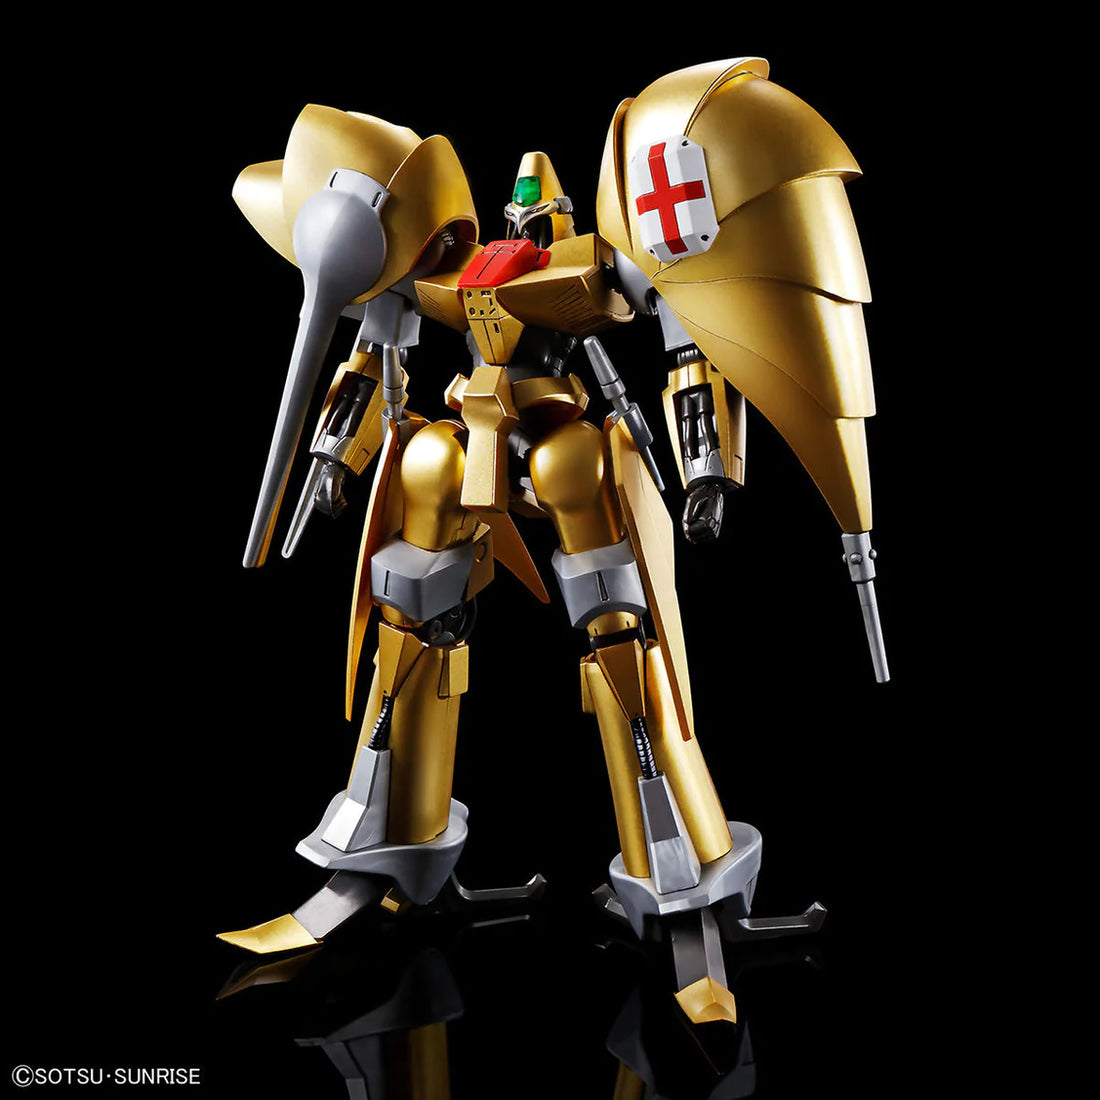 HG 1/144 Aug - Gundam Extra-Your BEST Gunpla Supplier